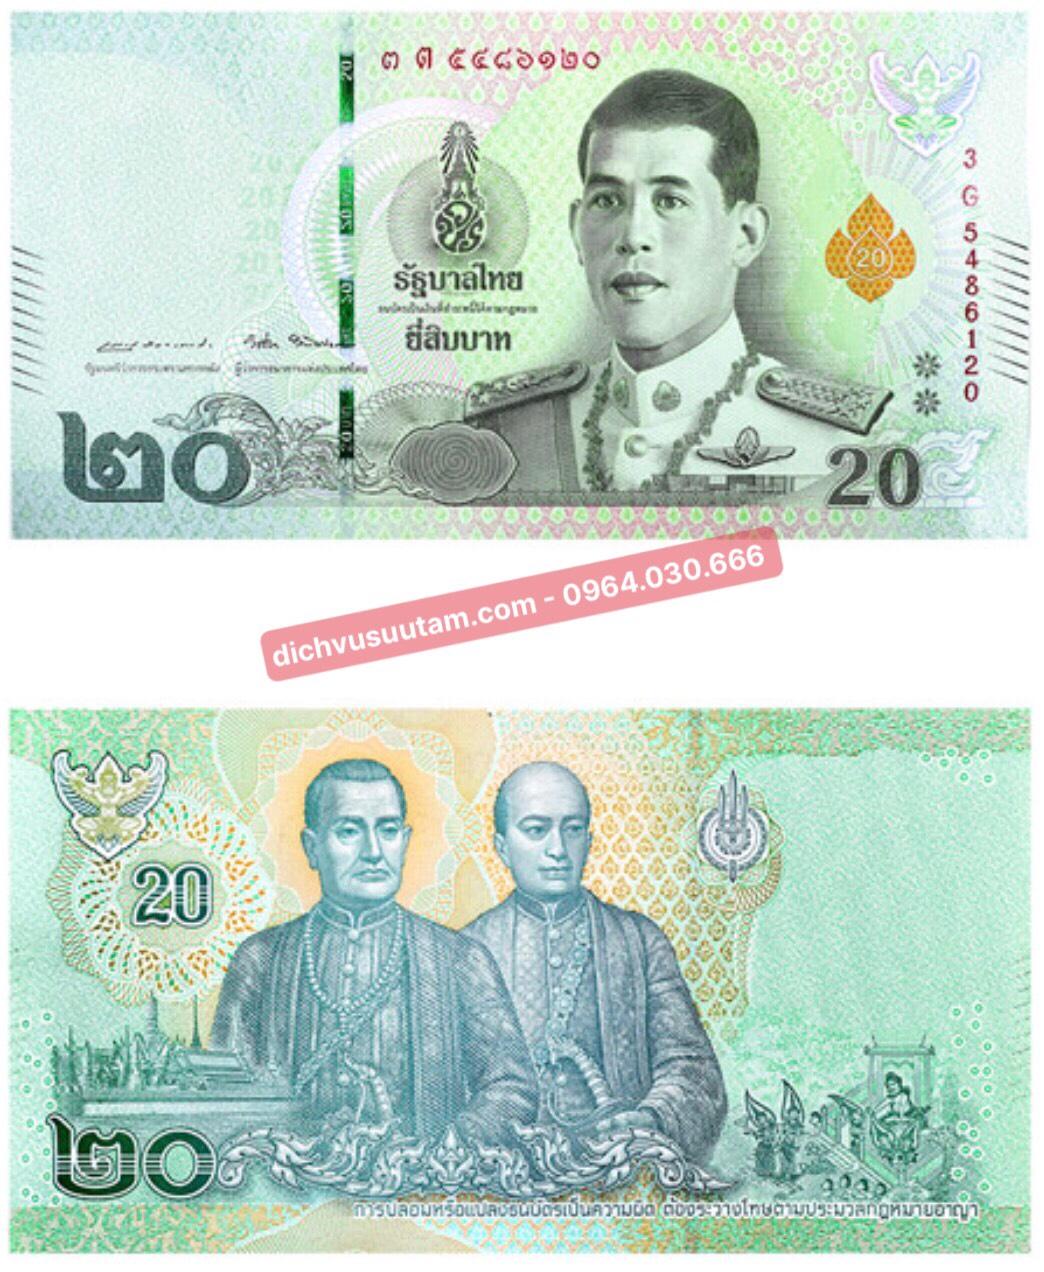 Tiền Bath Thái Lan: Đây là một trong những đồng tiền có giá trị cao và được sử dụng phổ biến nhất tại Thái Lan. Ảnh liên quan đến tiền Bath Thái Lan sẽ giúp bạn thấy rõ hơn về sự phong phú và đa dạng của nền kinh tế của đất nước này.